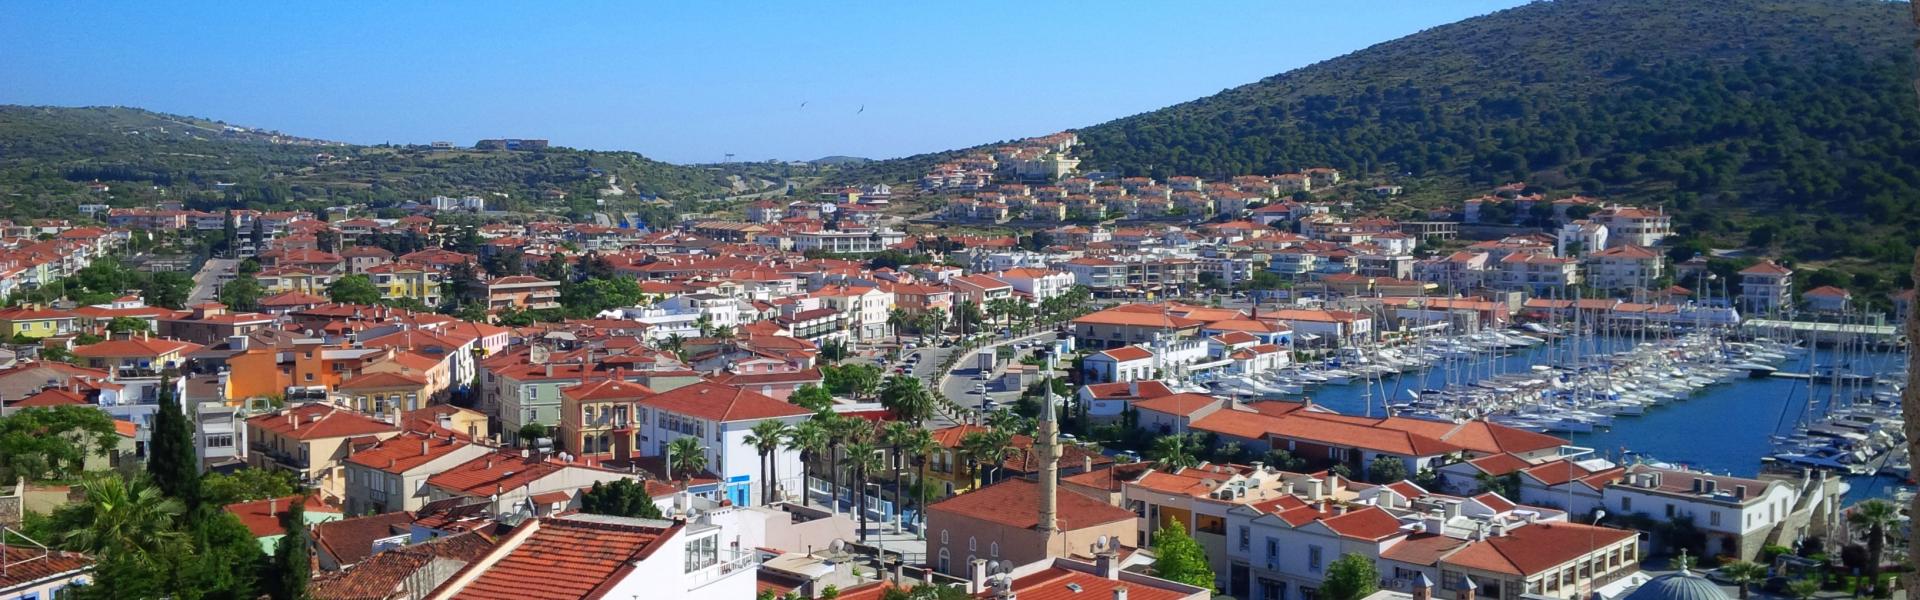 Ferienwohnungen & Ferienhäuser in Çeşme  - HomeToGo